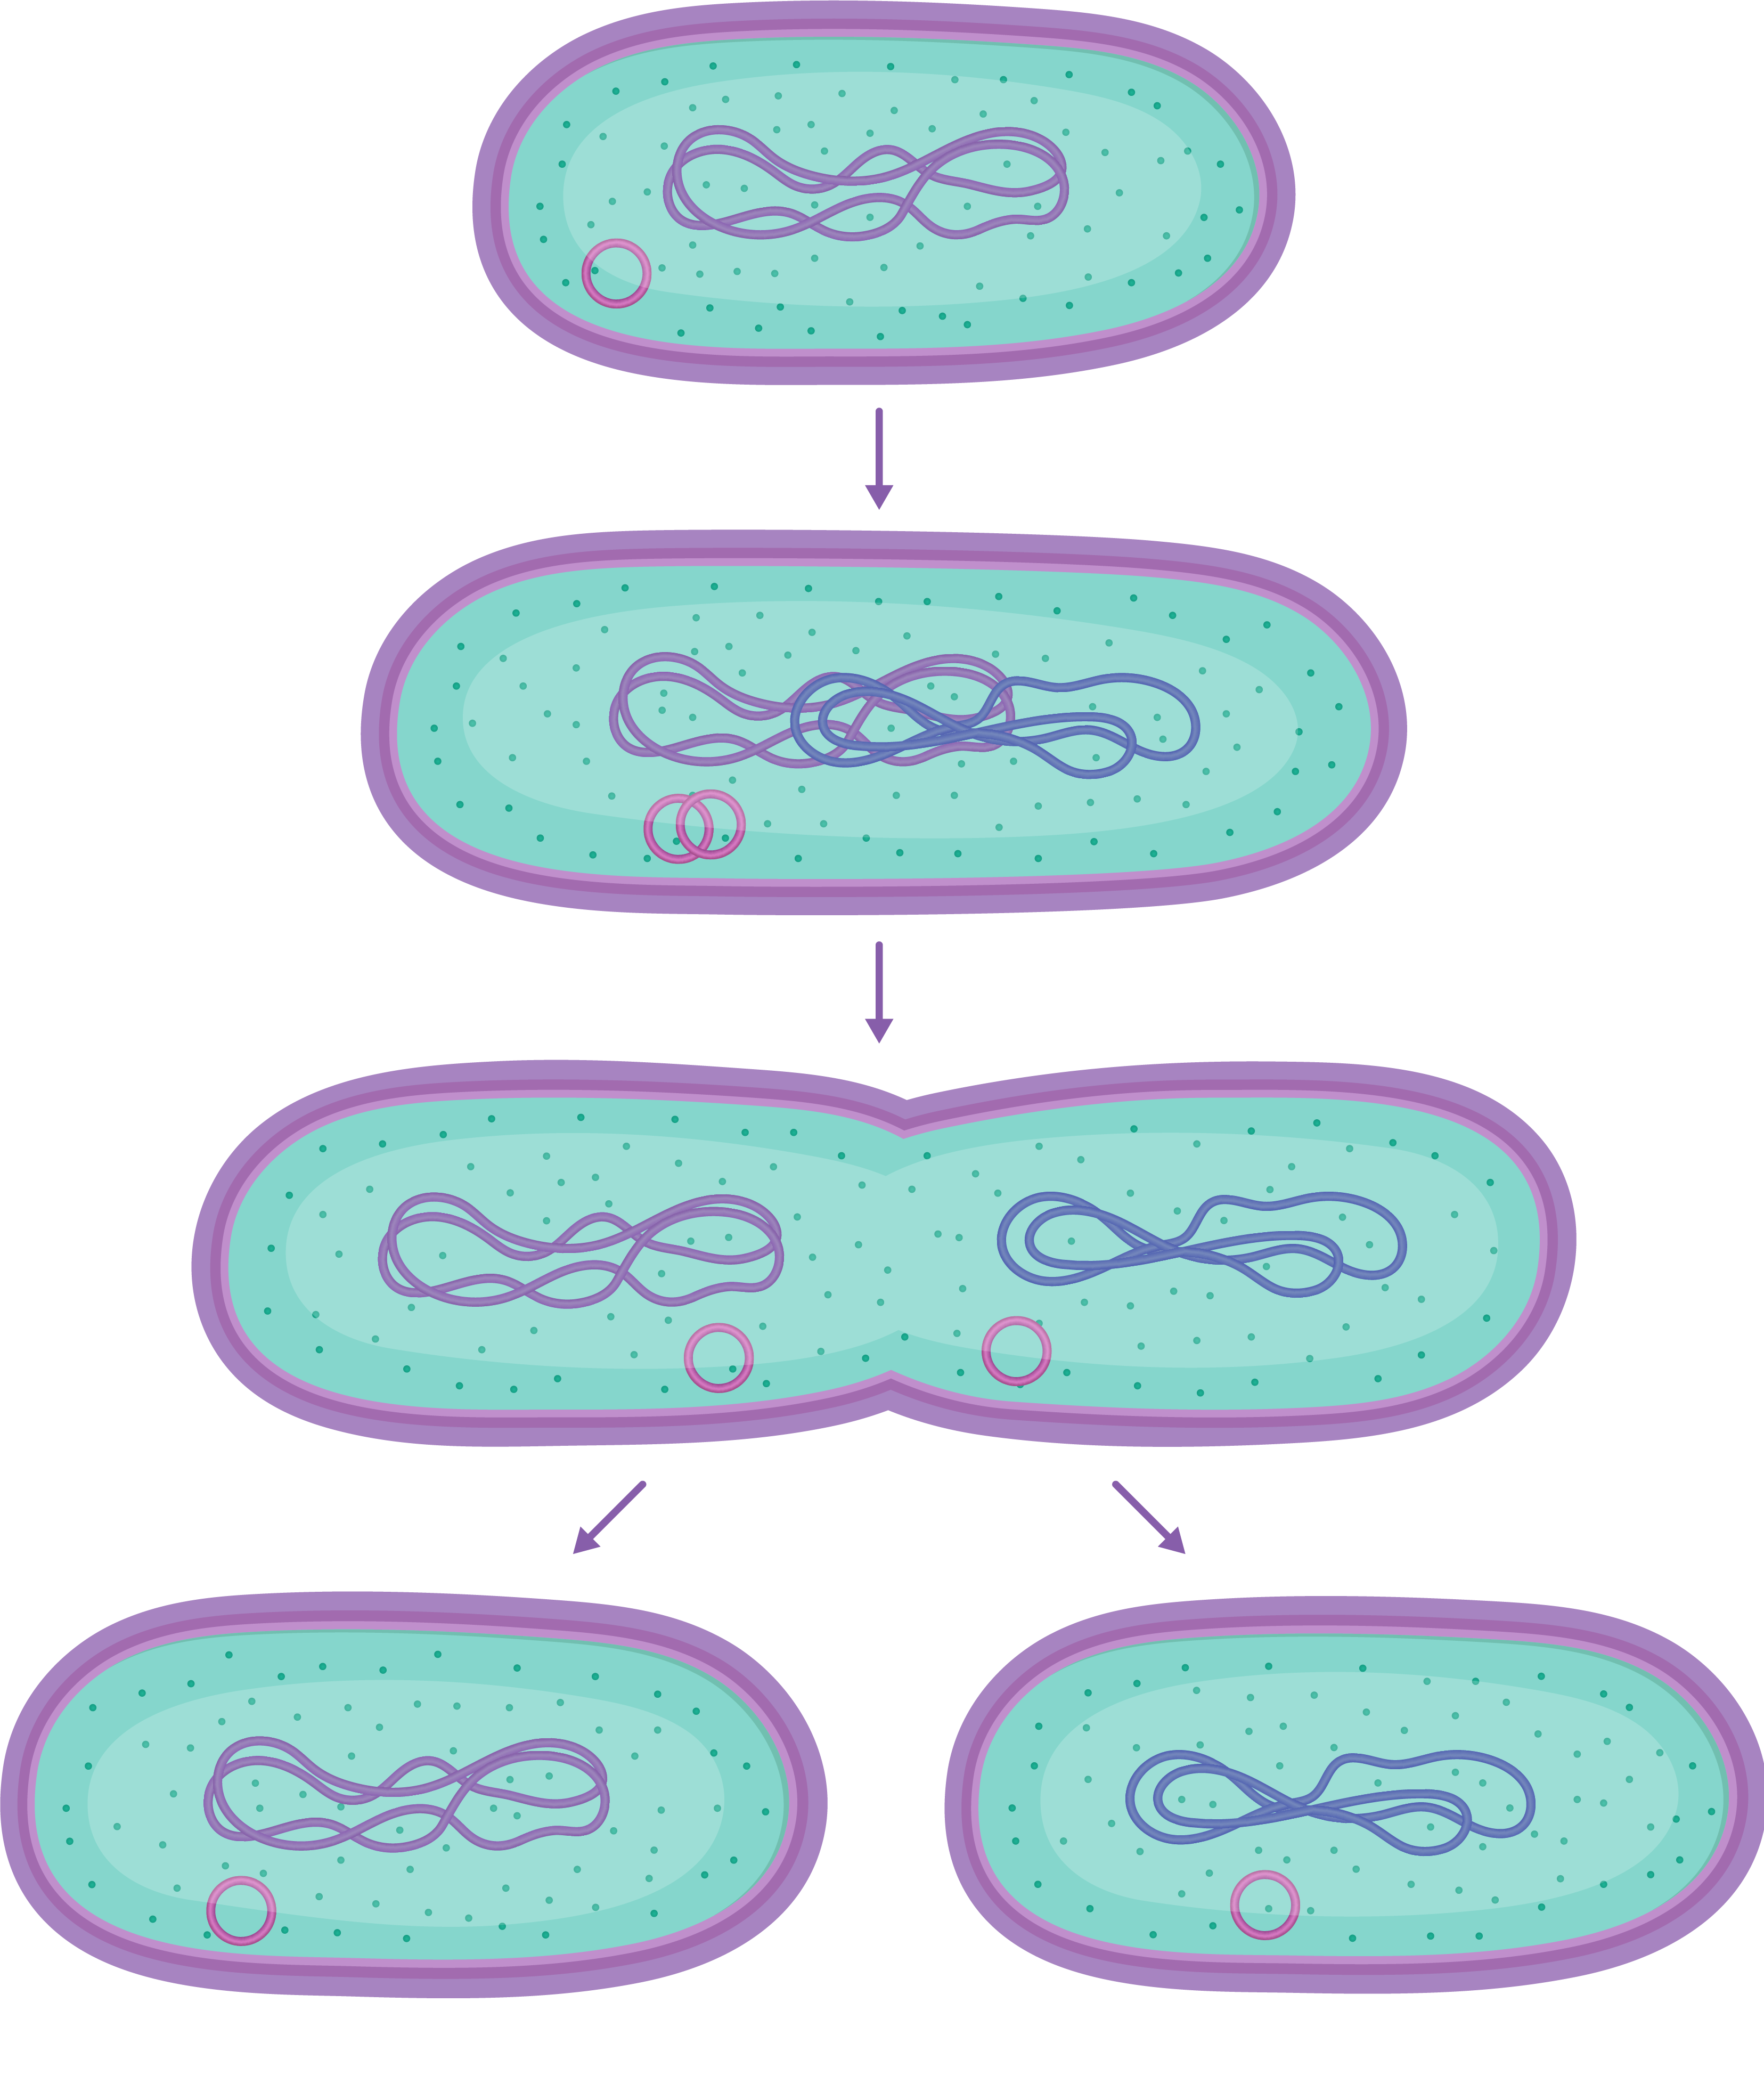 Клеточная перетяжка у каких клеток. Амитоз и бинарное деление. Амитоз у бактерий. Деление прокариот (бинарное деление). Деление бактериальной клетки путем перетяжки.